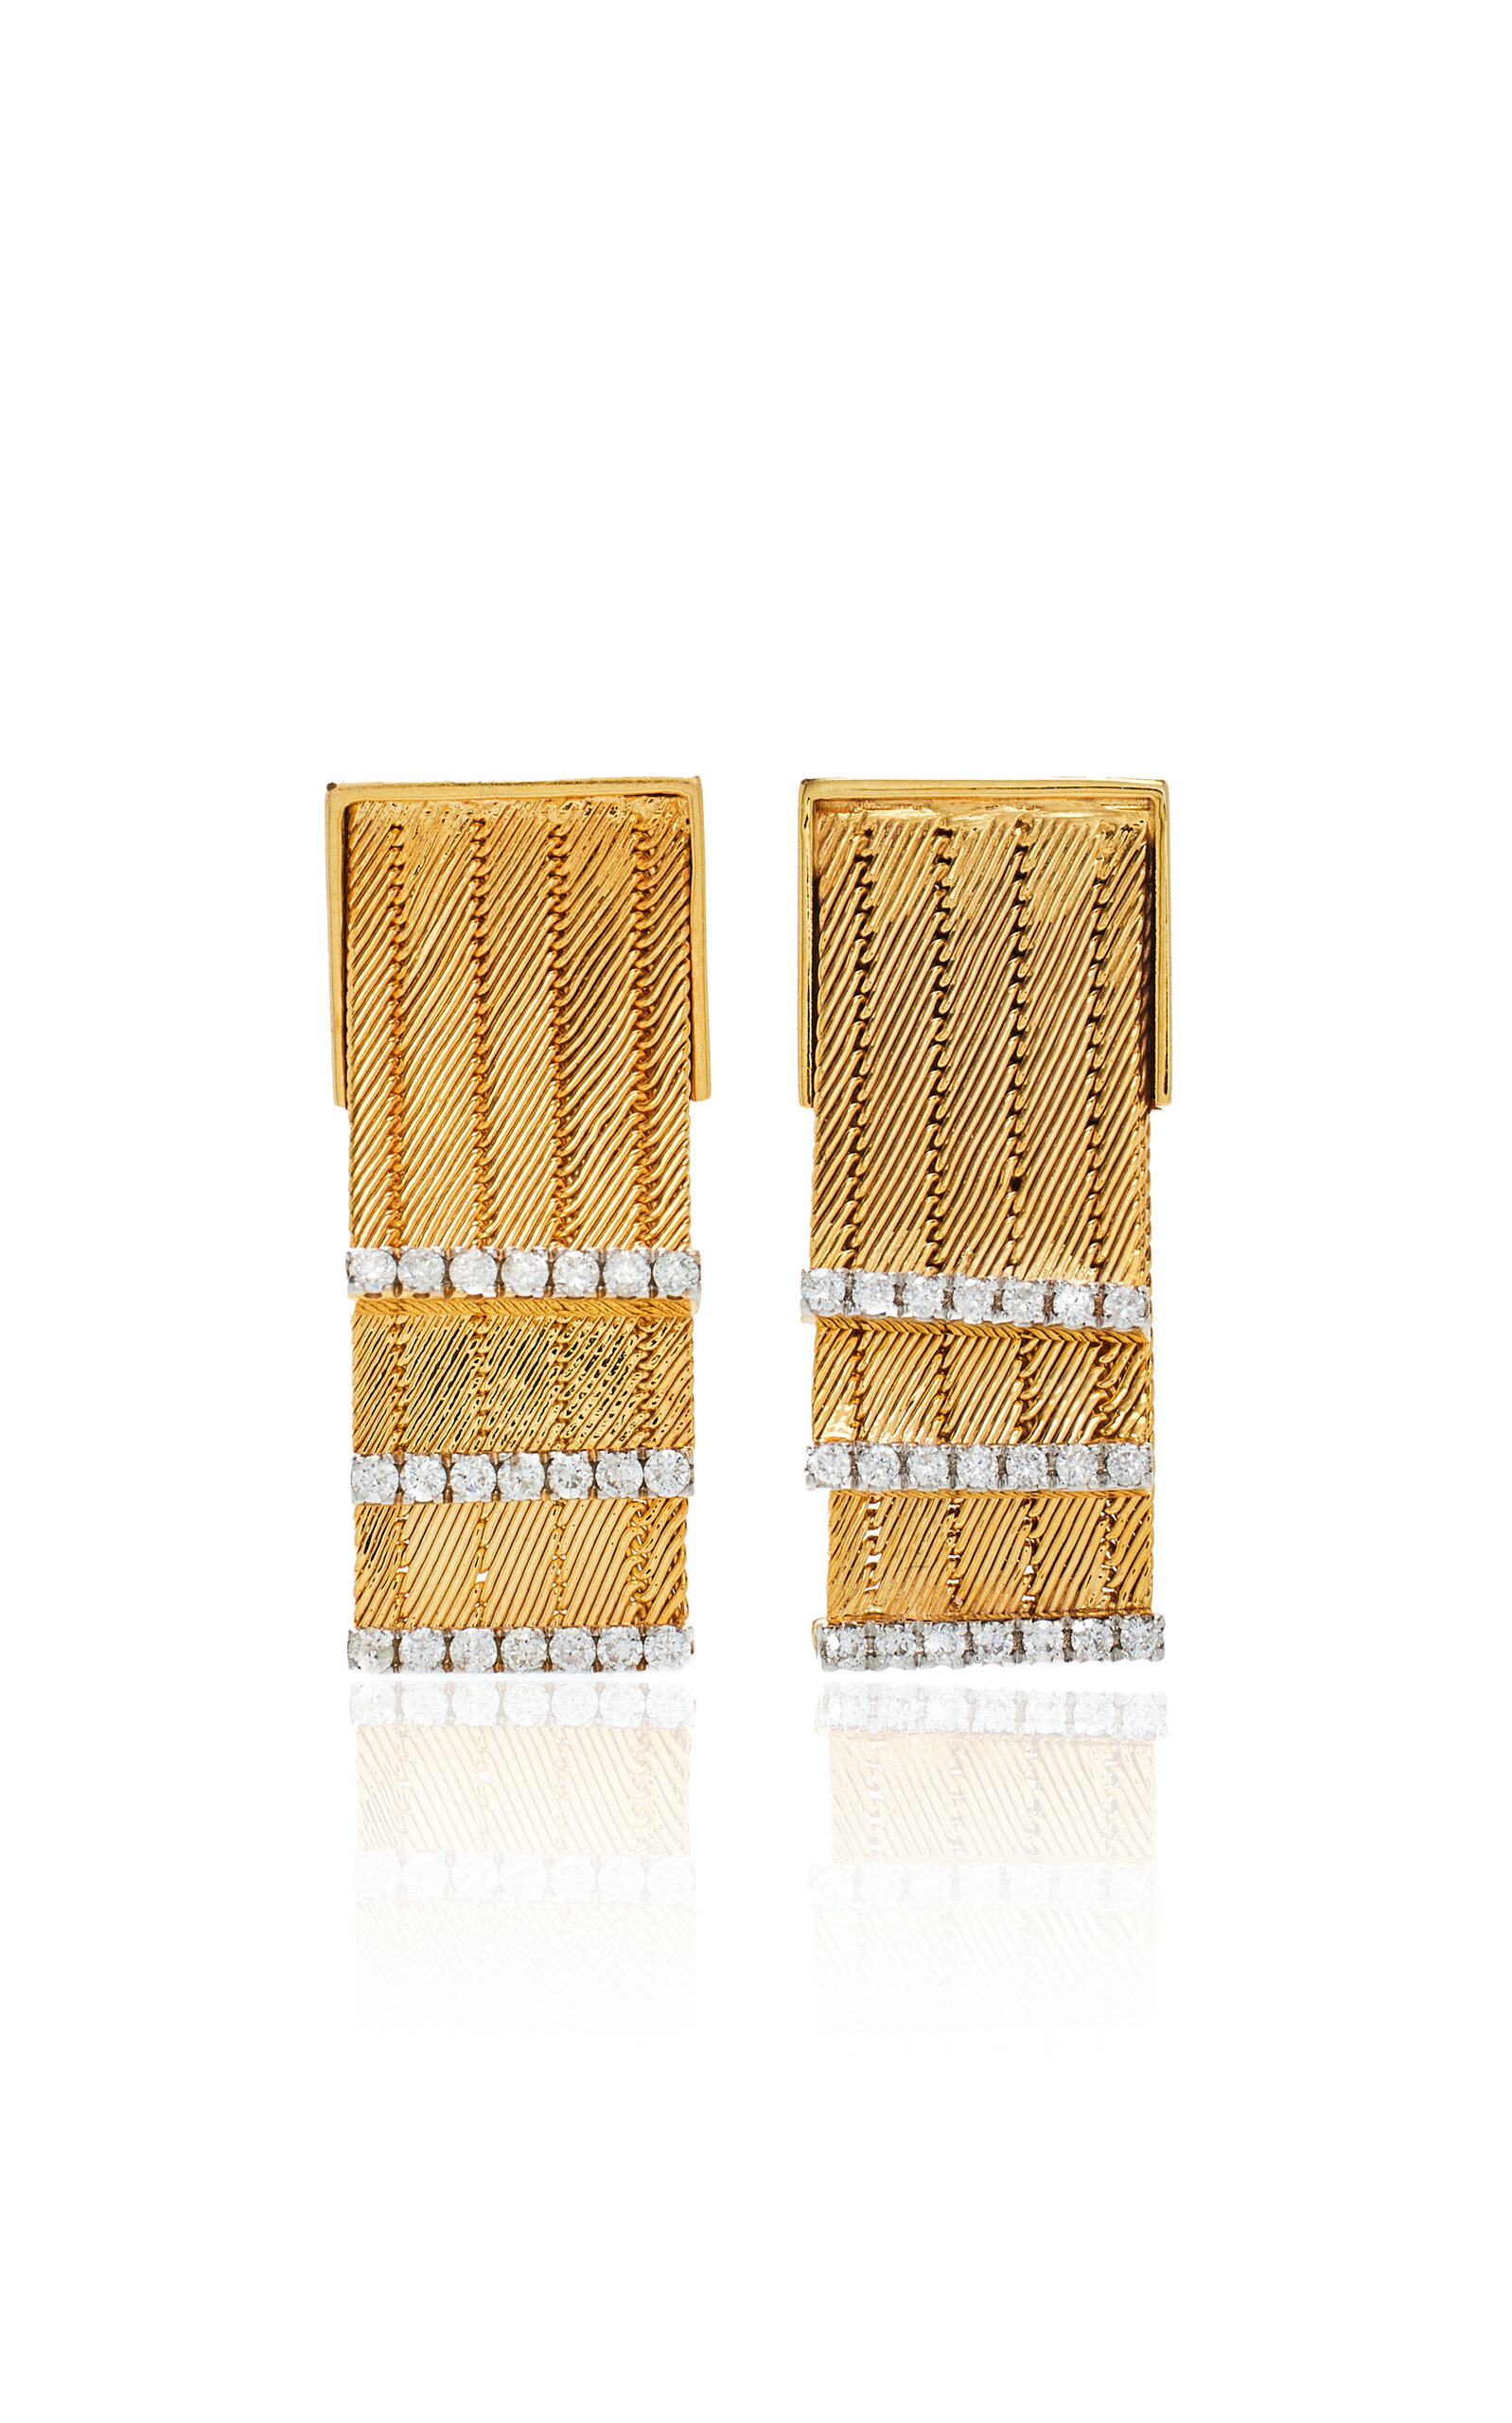 Feuille 14K Yellow Gold Diamond Earrings